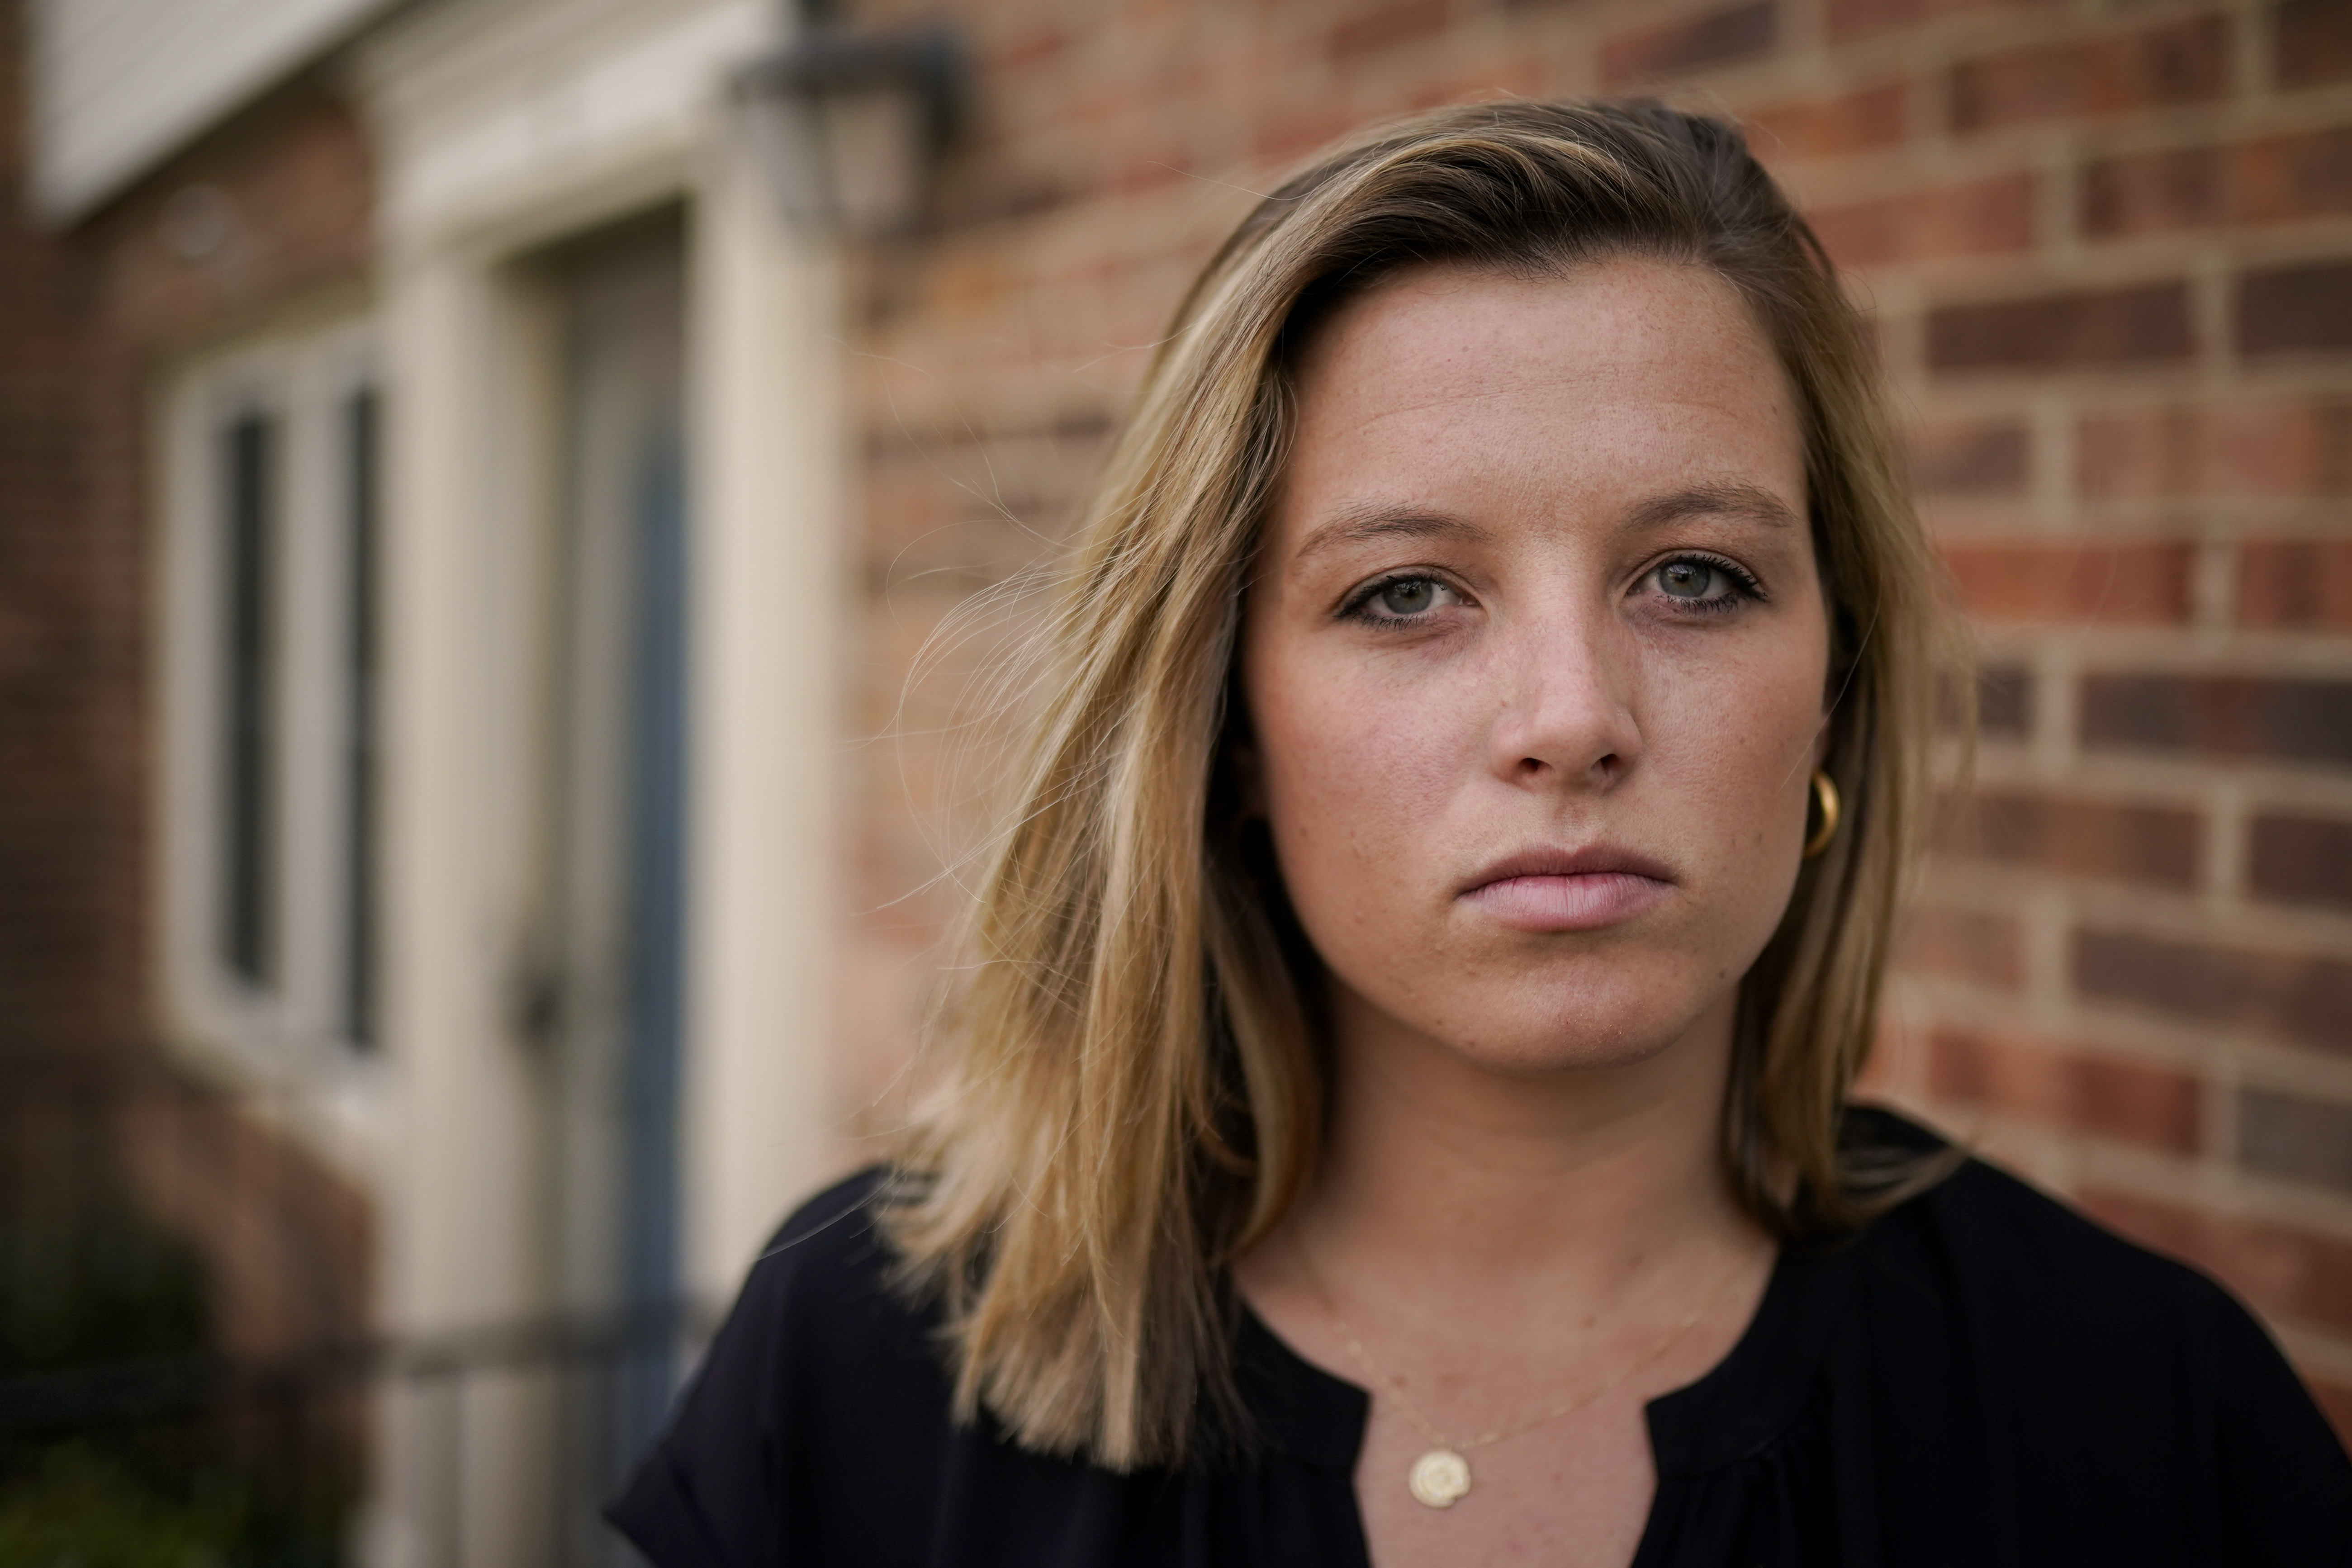 Gettysburg College grad hopes for rape arrest after receiving Facebook confession